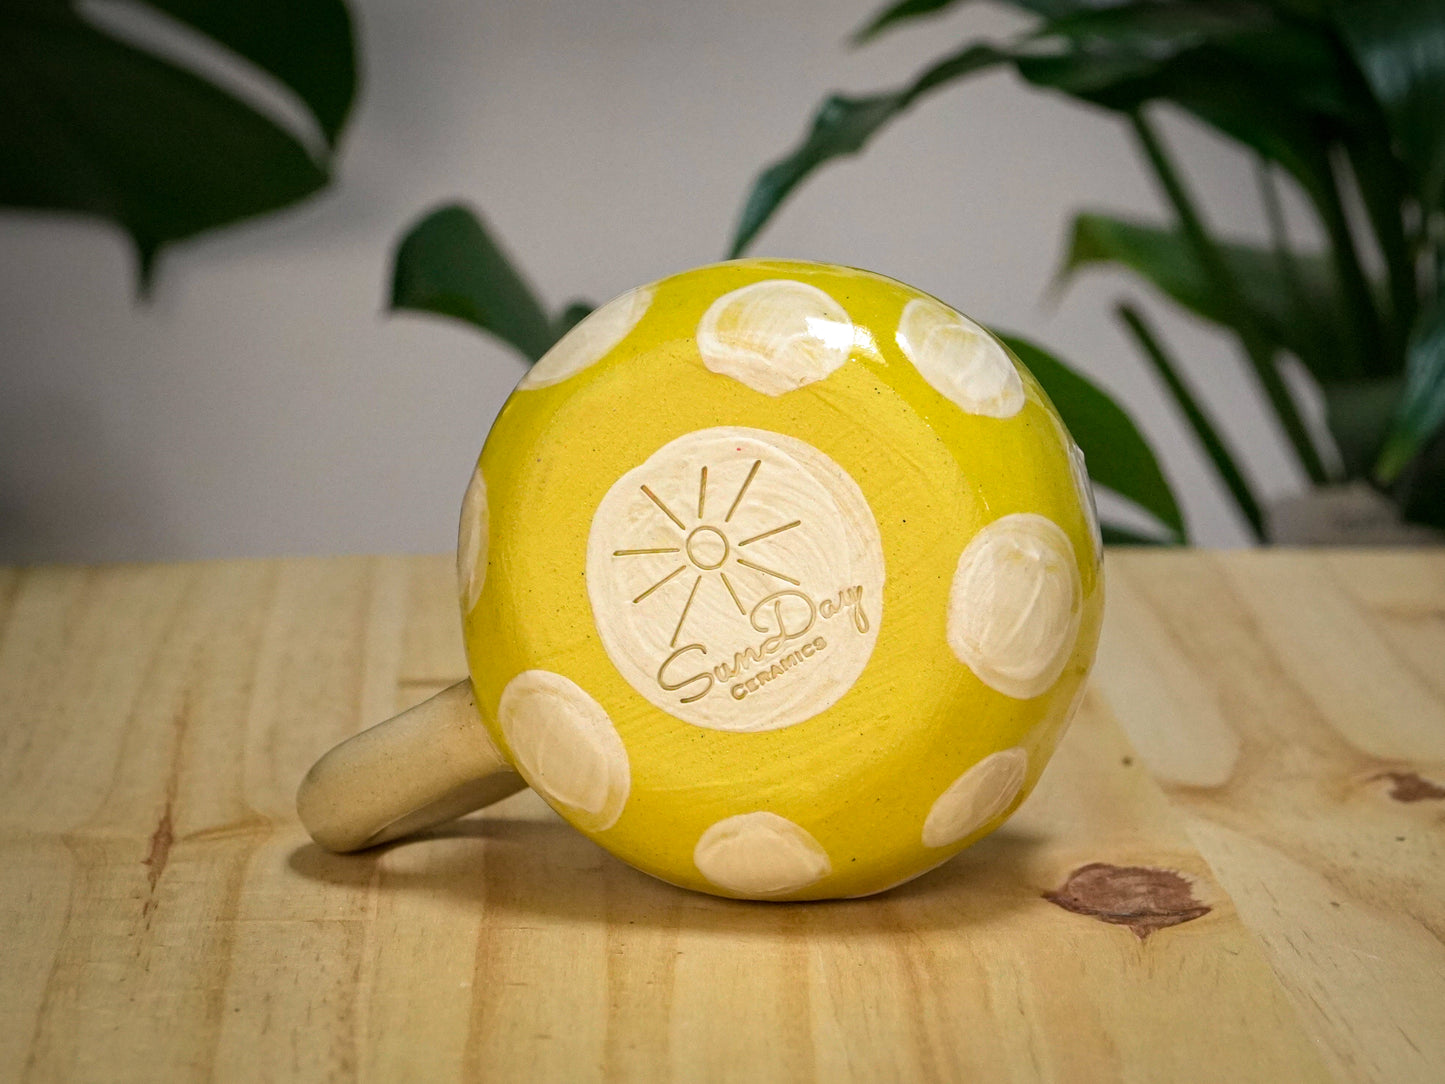 Ceramic Hand-built Mushroom Mug